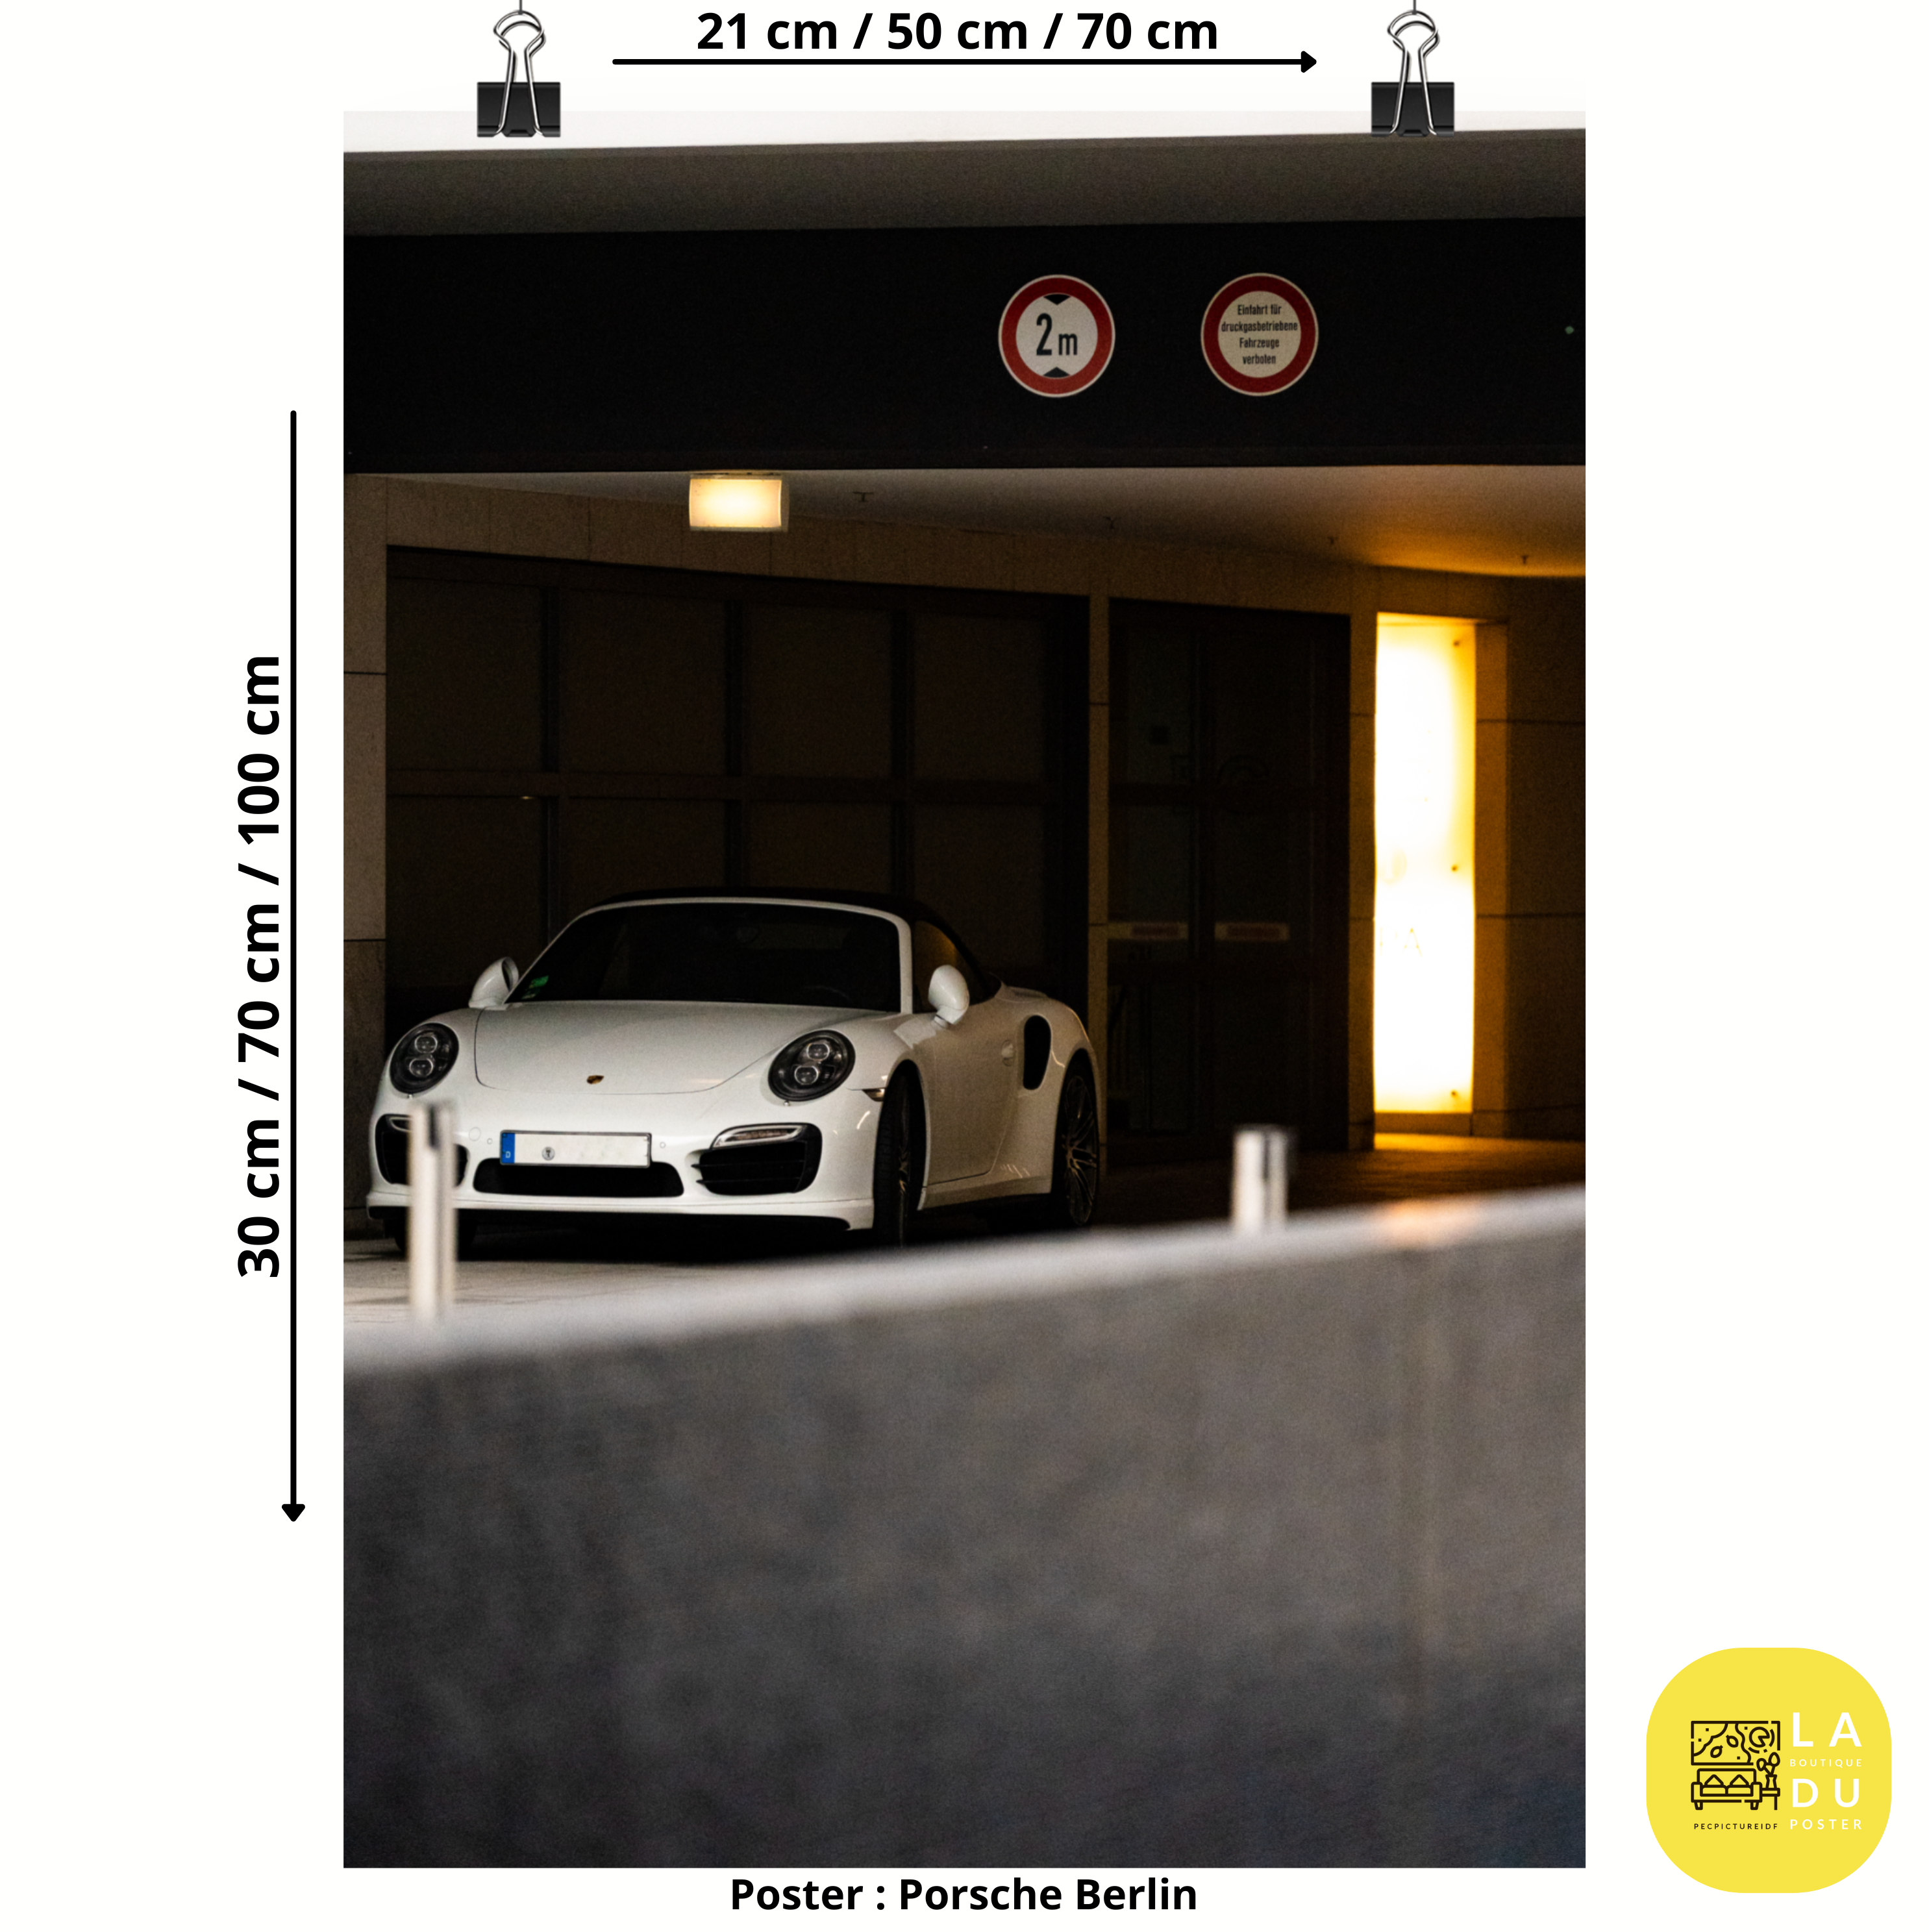 Poster mural - Porsche 911 turbo s cabriolet – Photographie de voiture de sport – Poster photo, poster XXL, photographie murale et des posters muraux unique au monde. La boutique de posters créée par Yann Peccard un Photographe français.